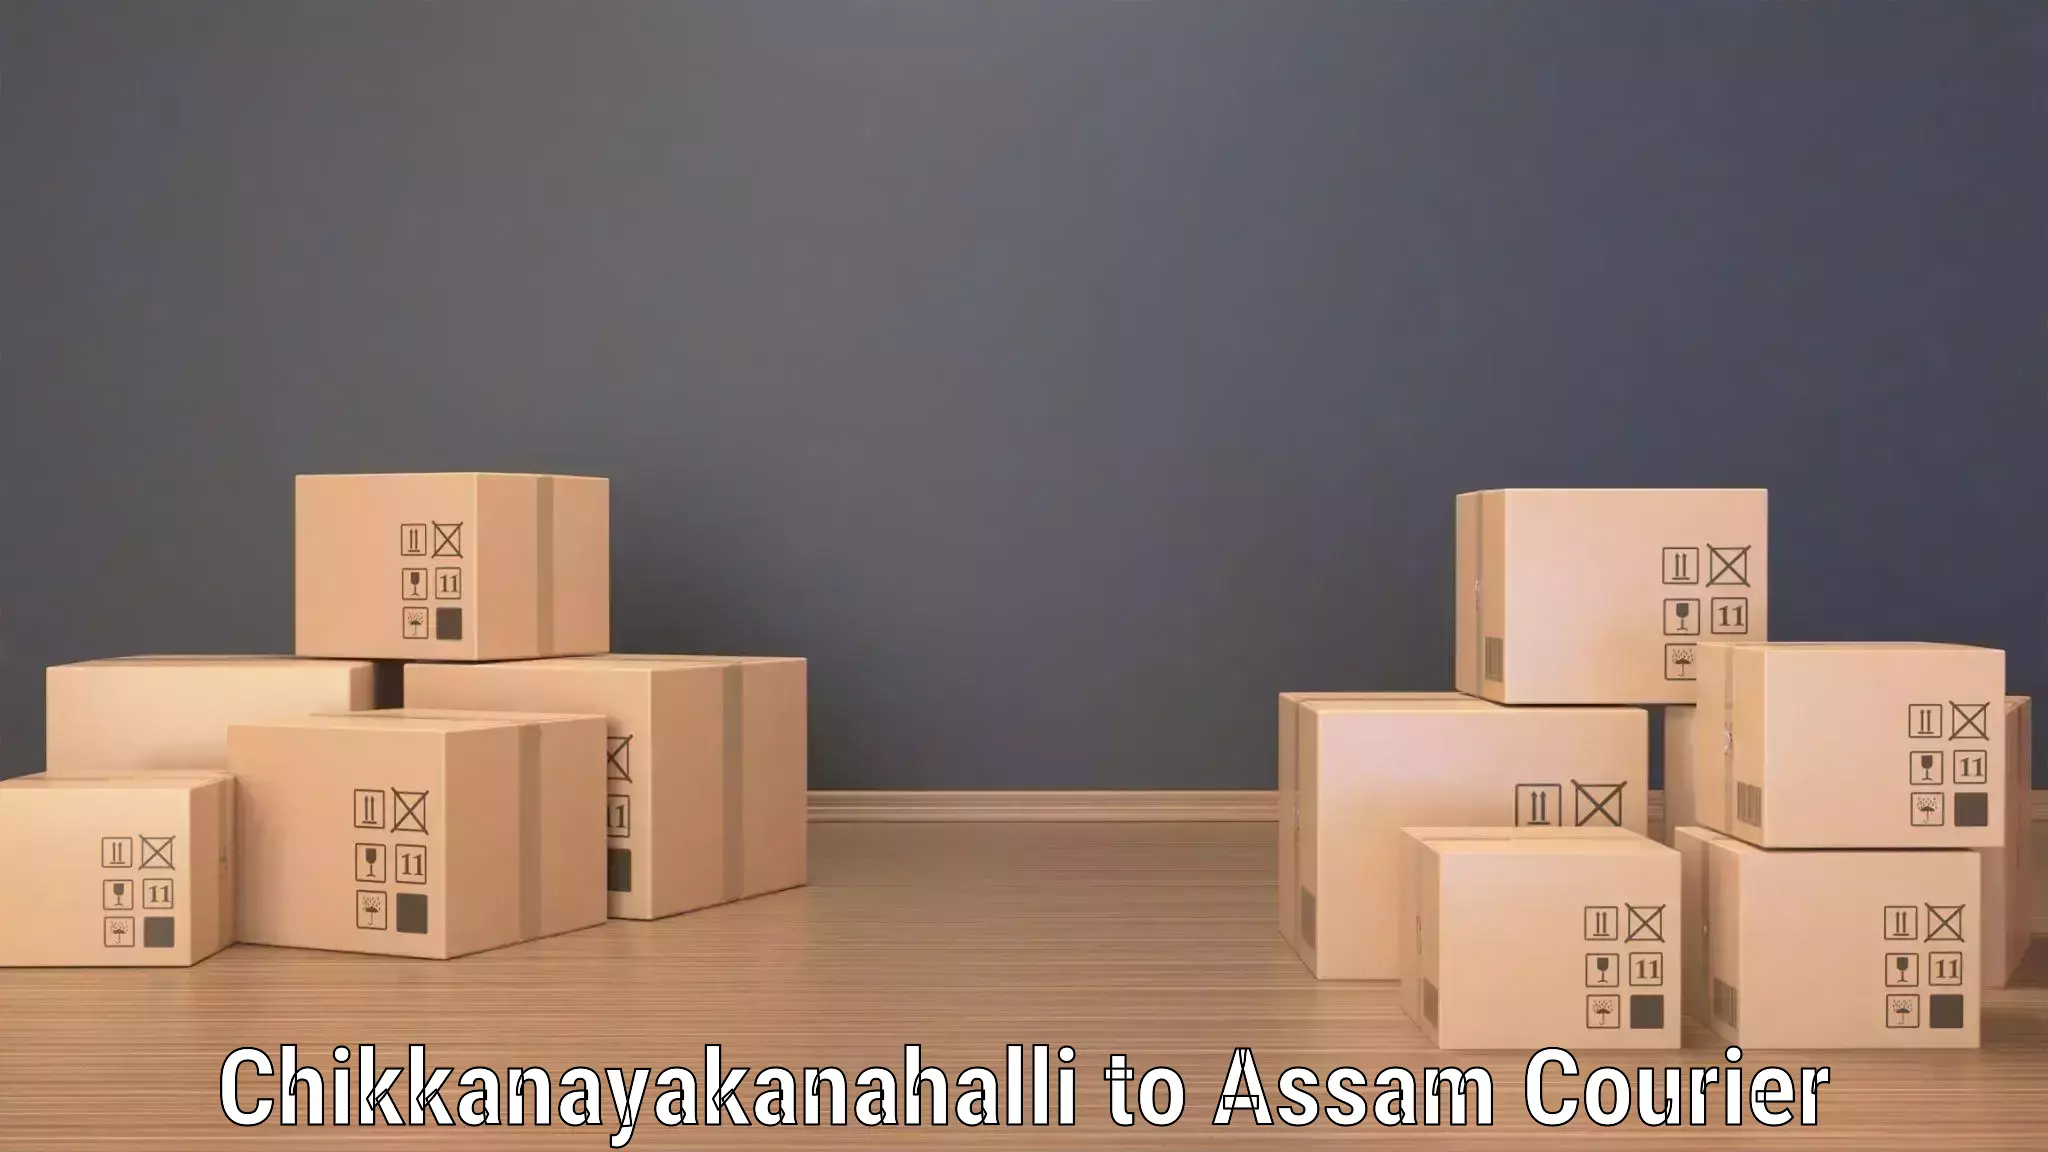 Cargo delivery service Chikkanayakanahalli to Khetri